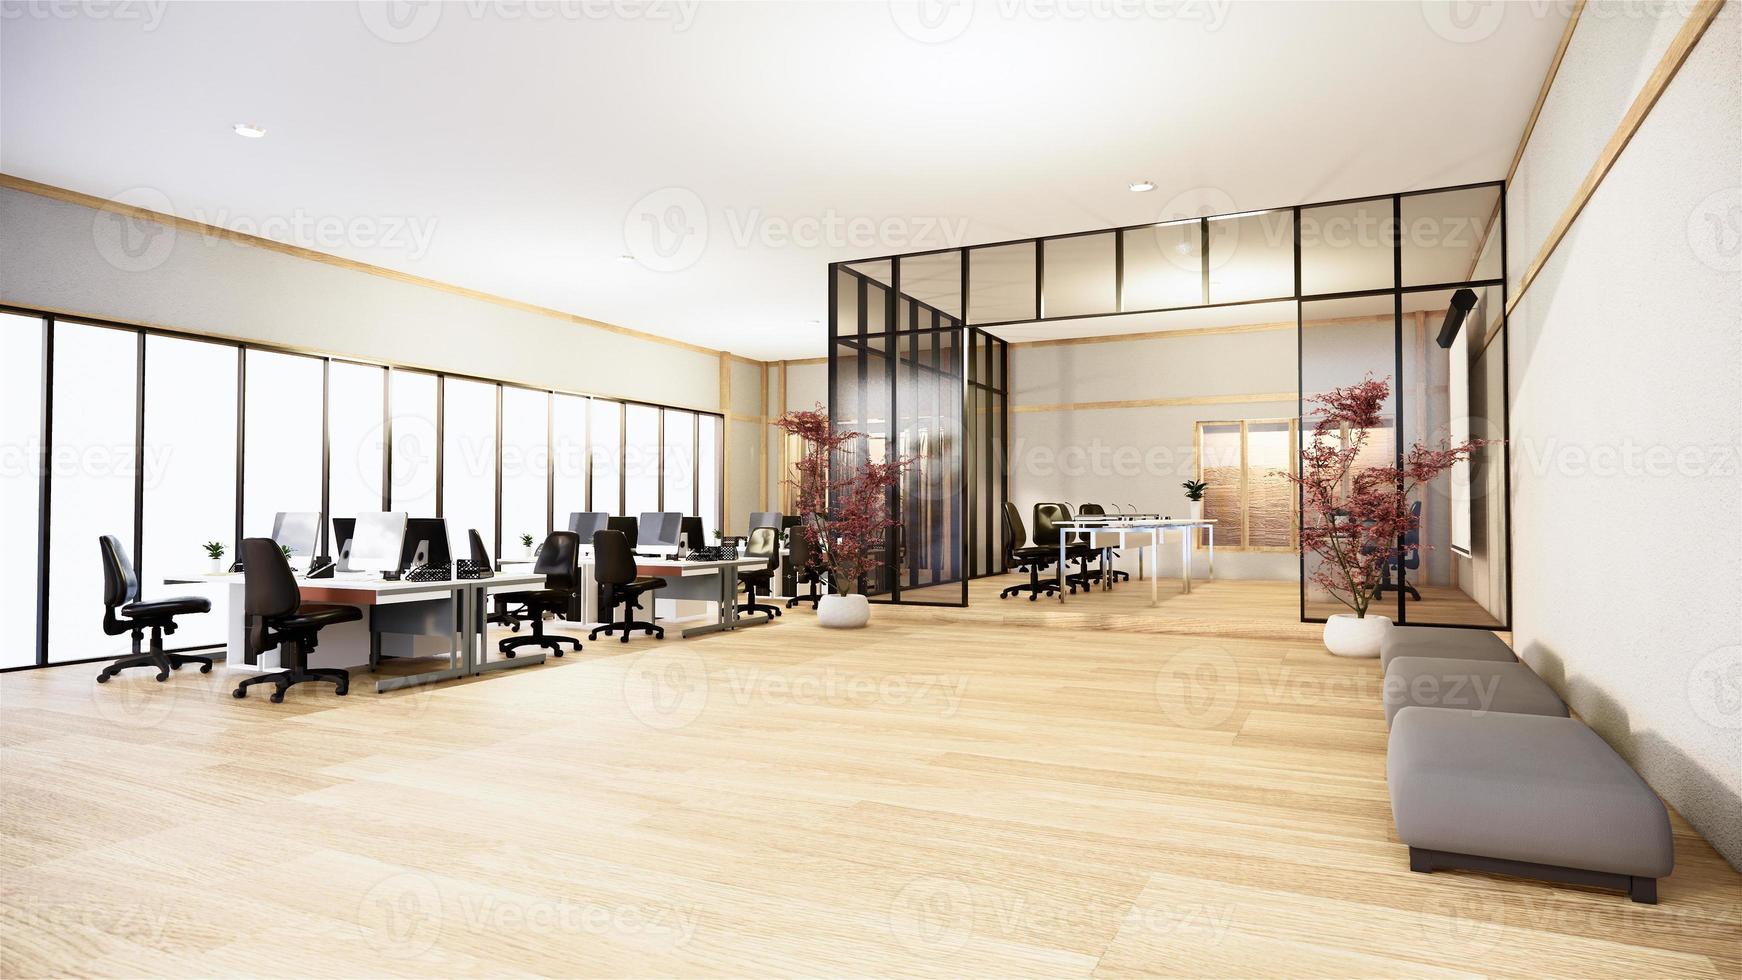 ufficio affari - bella sala riunioni japanroom e tavolo da conferenza, in stile moderno. rendering 3d foto